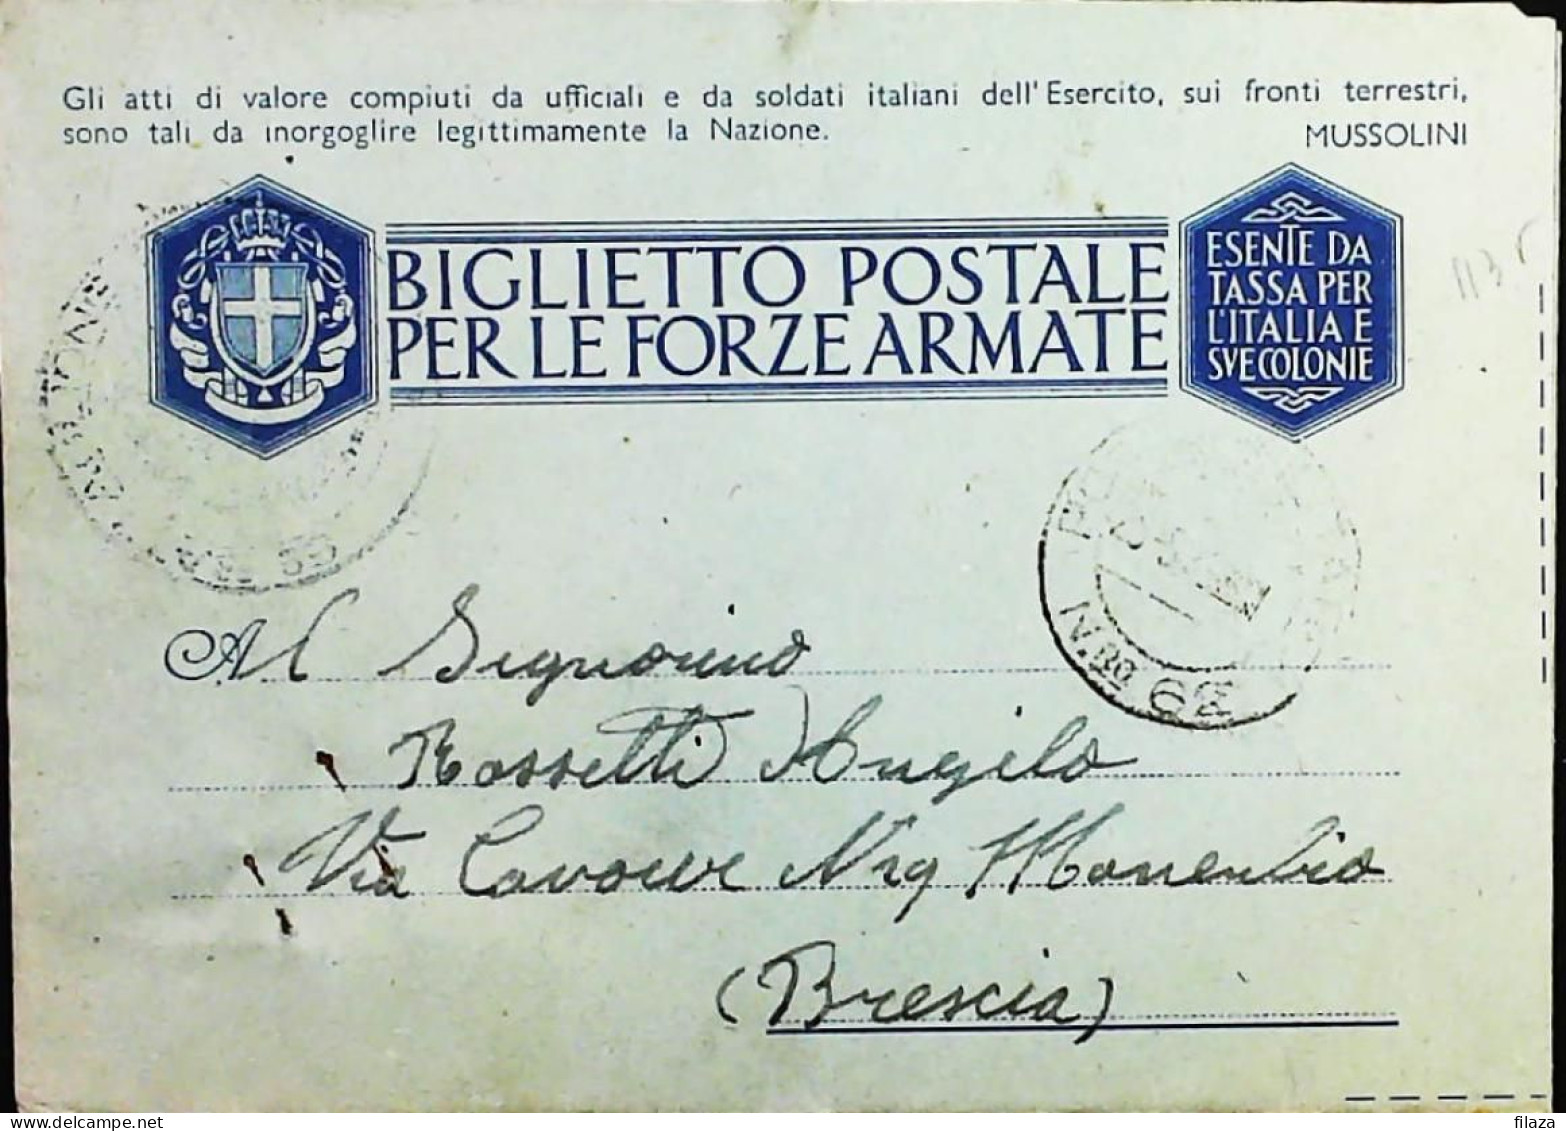 POSTA MILITARE ITALIA IN GRECIA  - WWII WW2 - S6833 - Military Mail (PM)